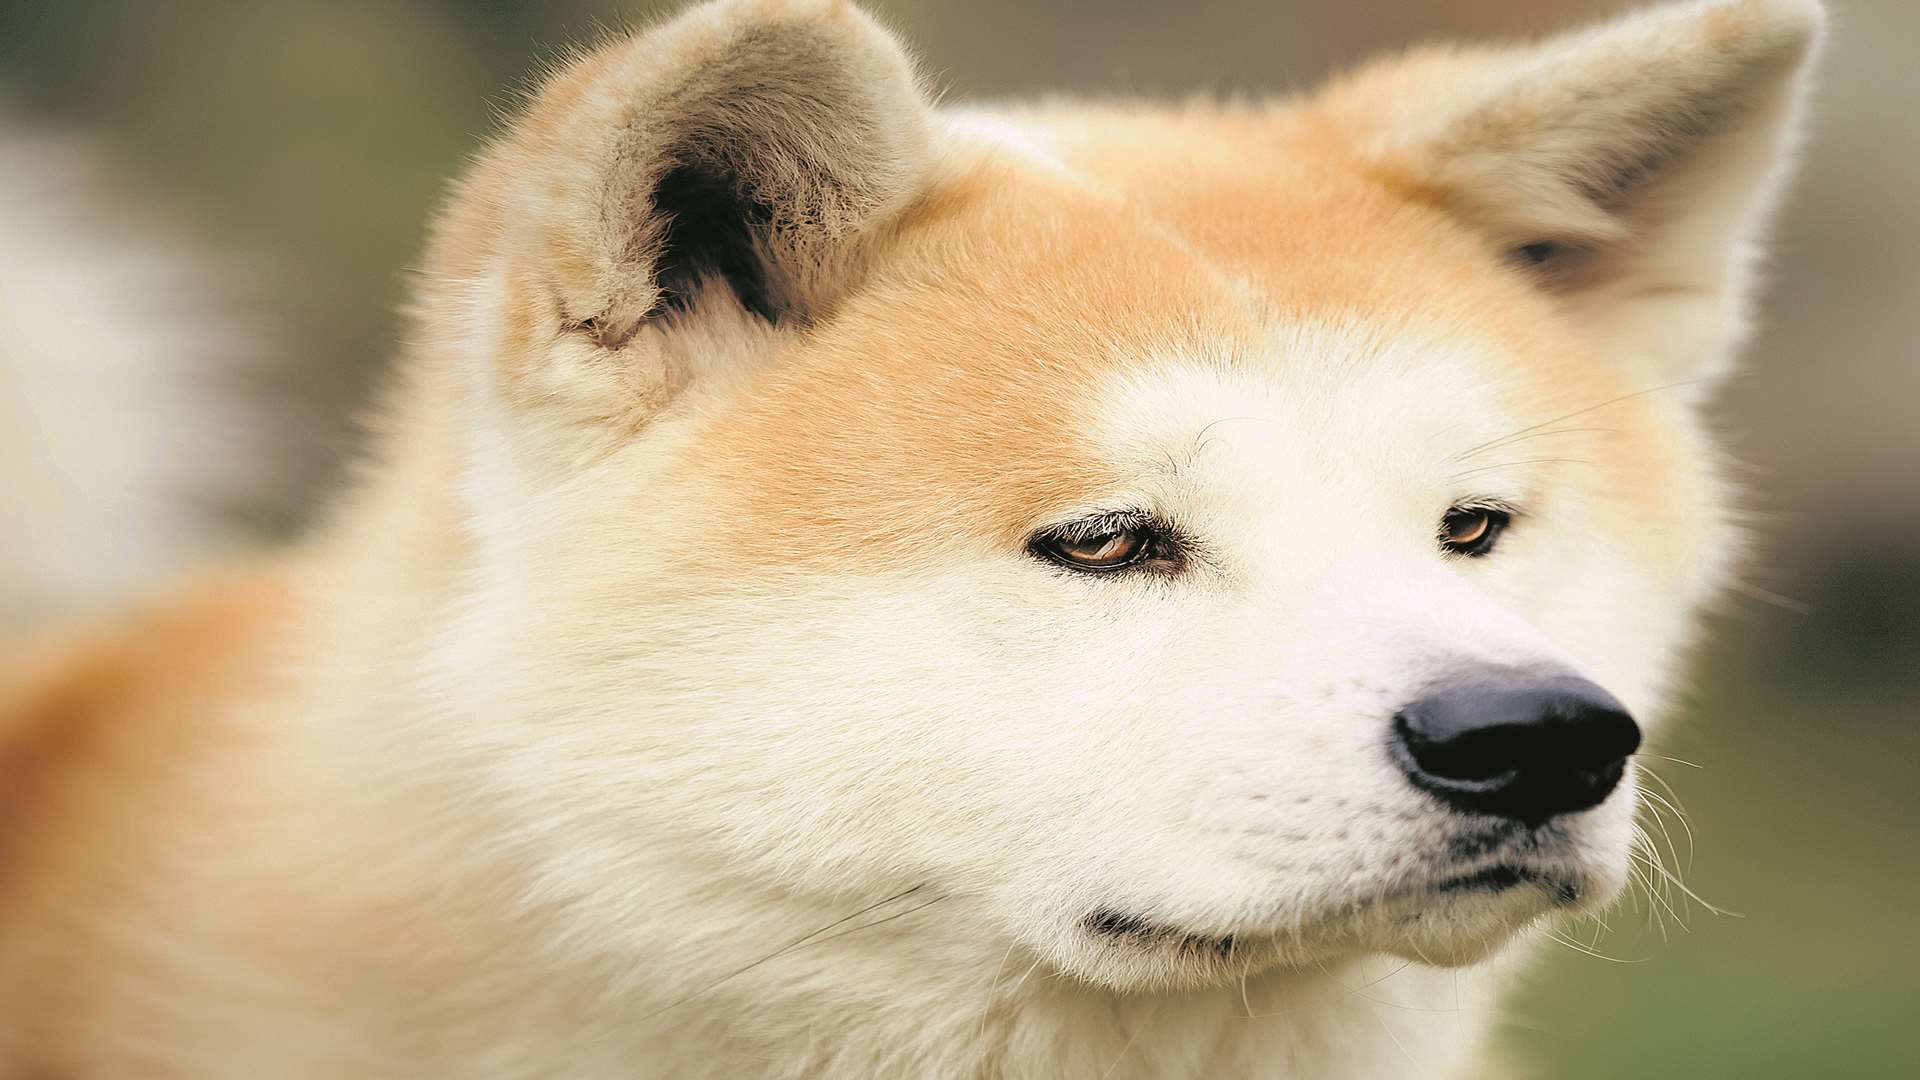 An akita dog. Stock image